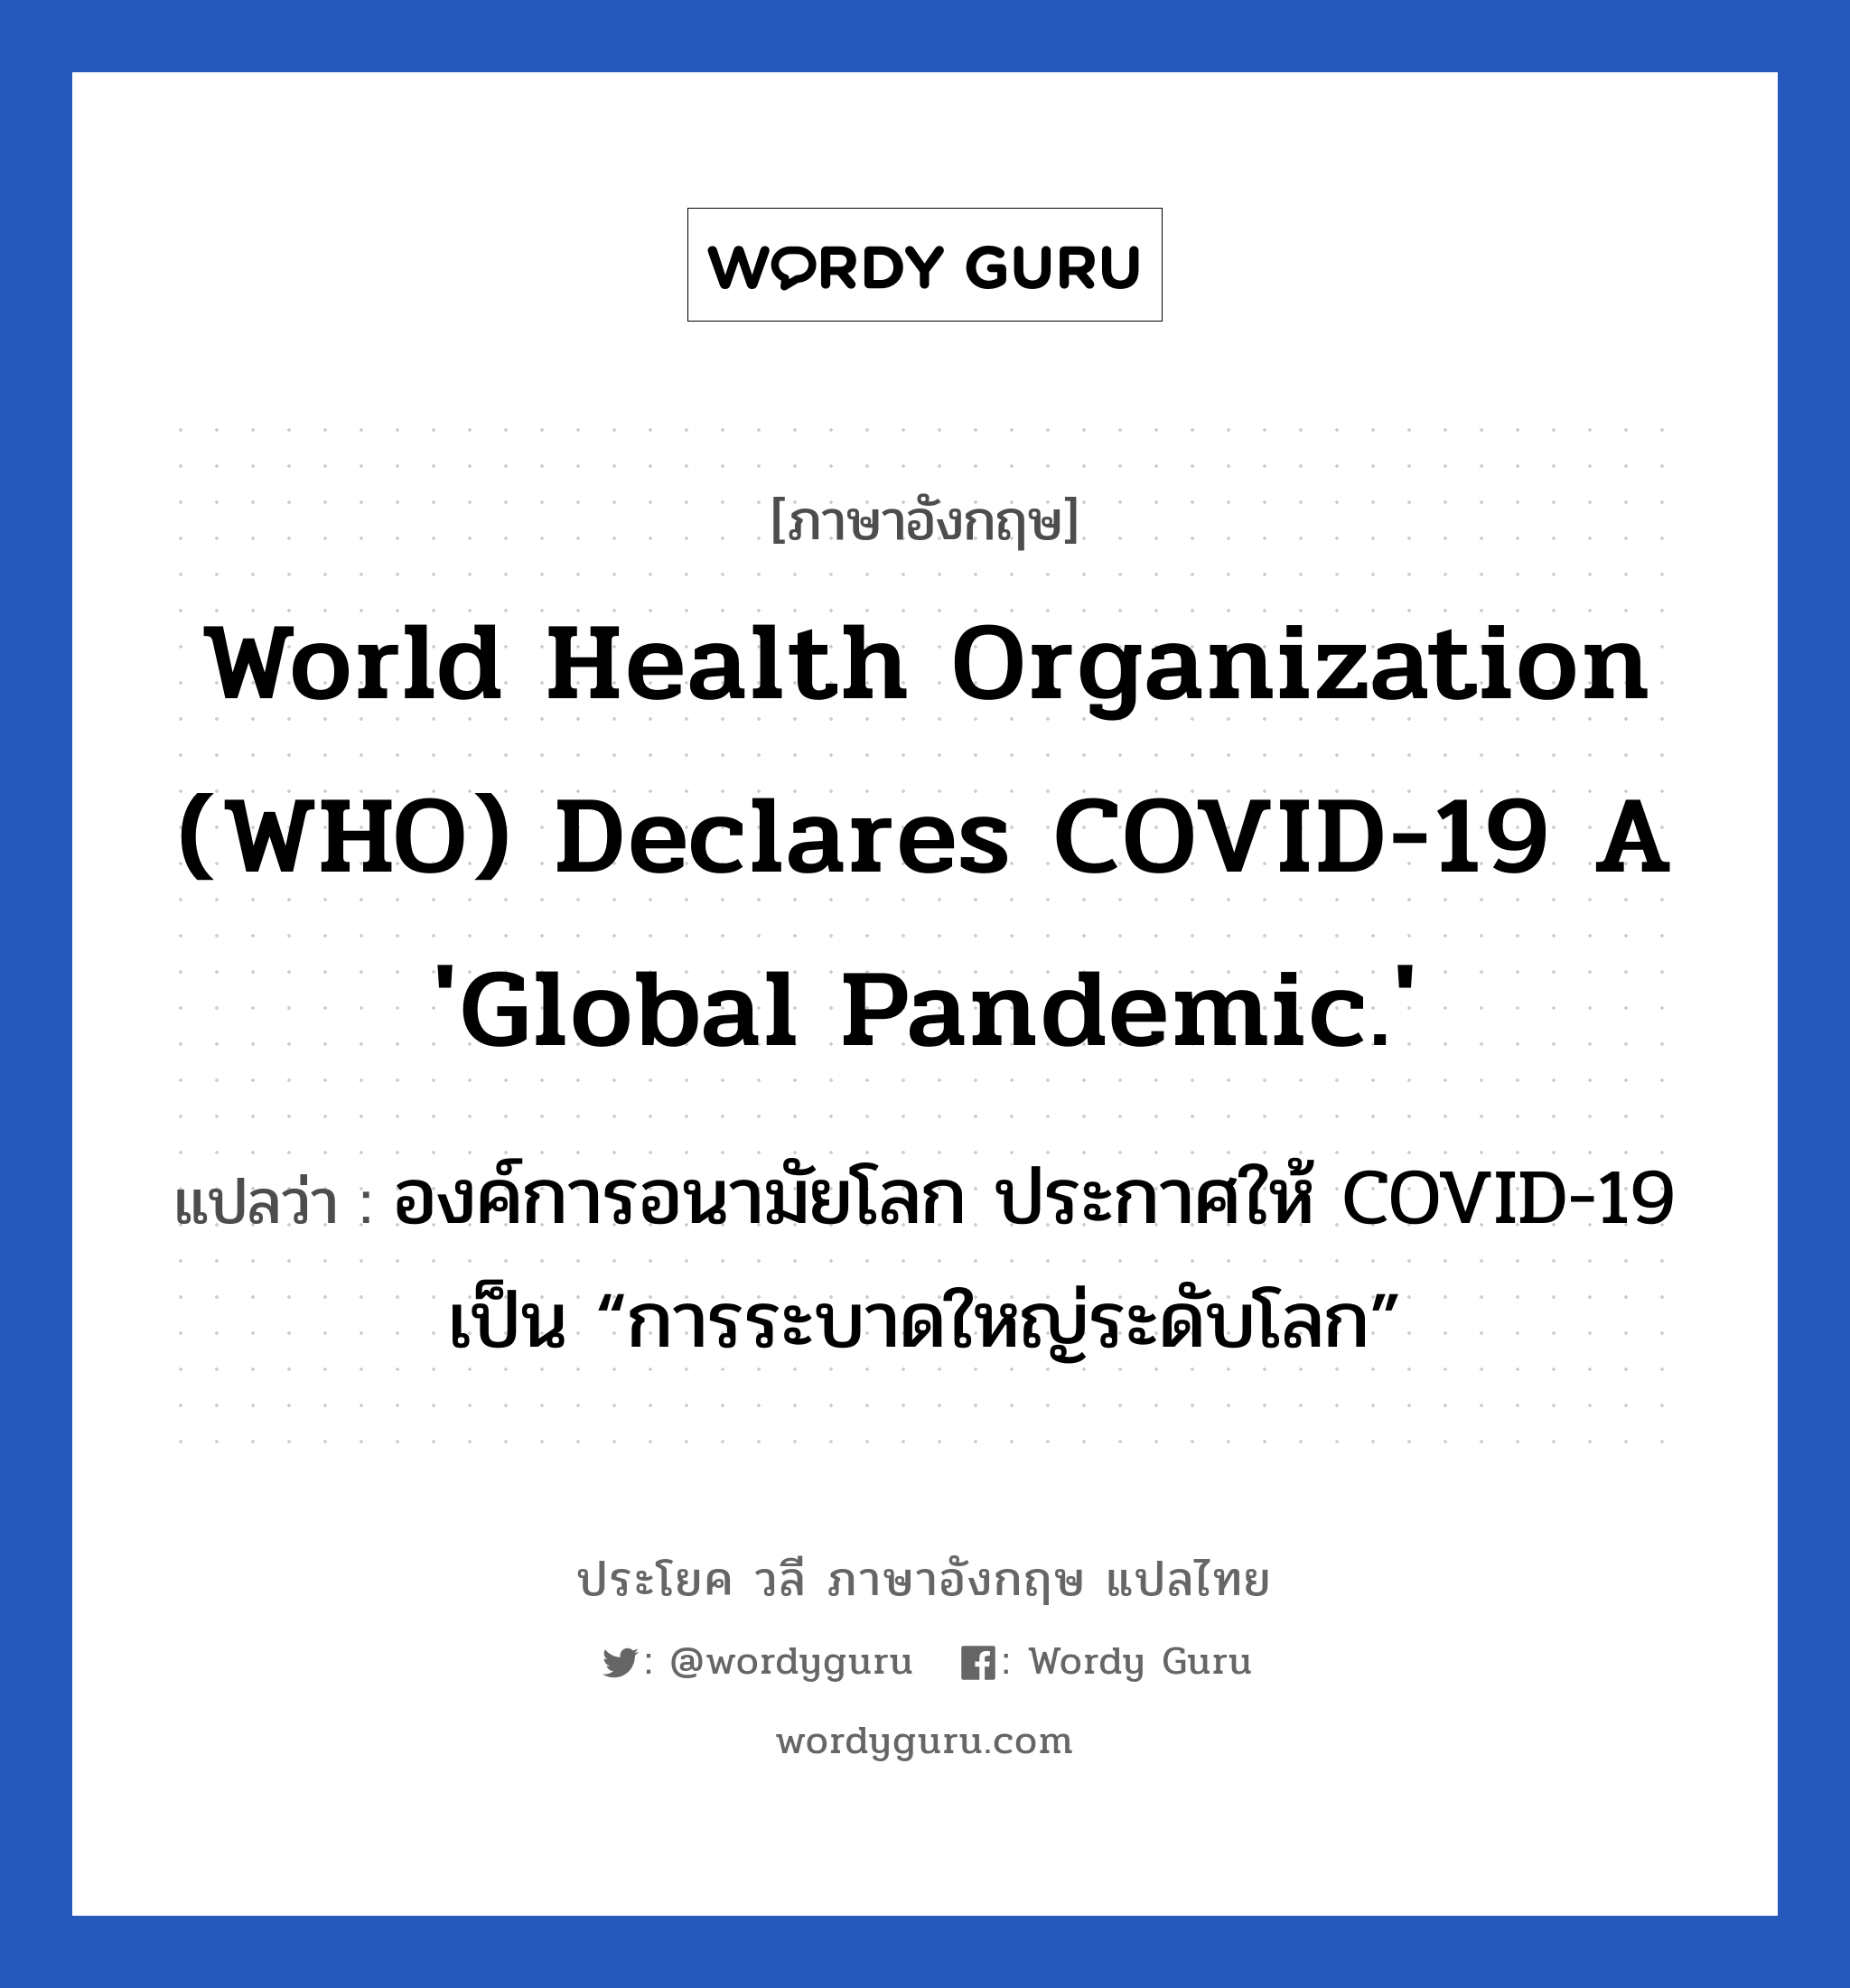 องค์การอนามัยโลก ประกาศให้ COVID-19 เป็น “การระบาดใหญ่ระดับโลก” ภาษาอังกฤษ?, วลีภาษาอังกฤษ องค์การอนามัยโลก ประกาศให้ COVID-19 เป็น “การระบาดใหญ่ระดับโลก” แปลว่า World Health Organization (WHO) Declares COVID-19 a 'Global Pandemic.'